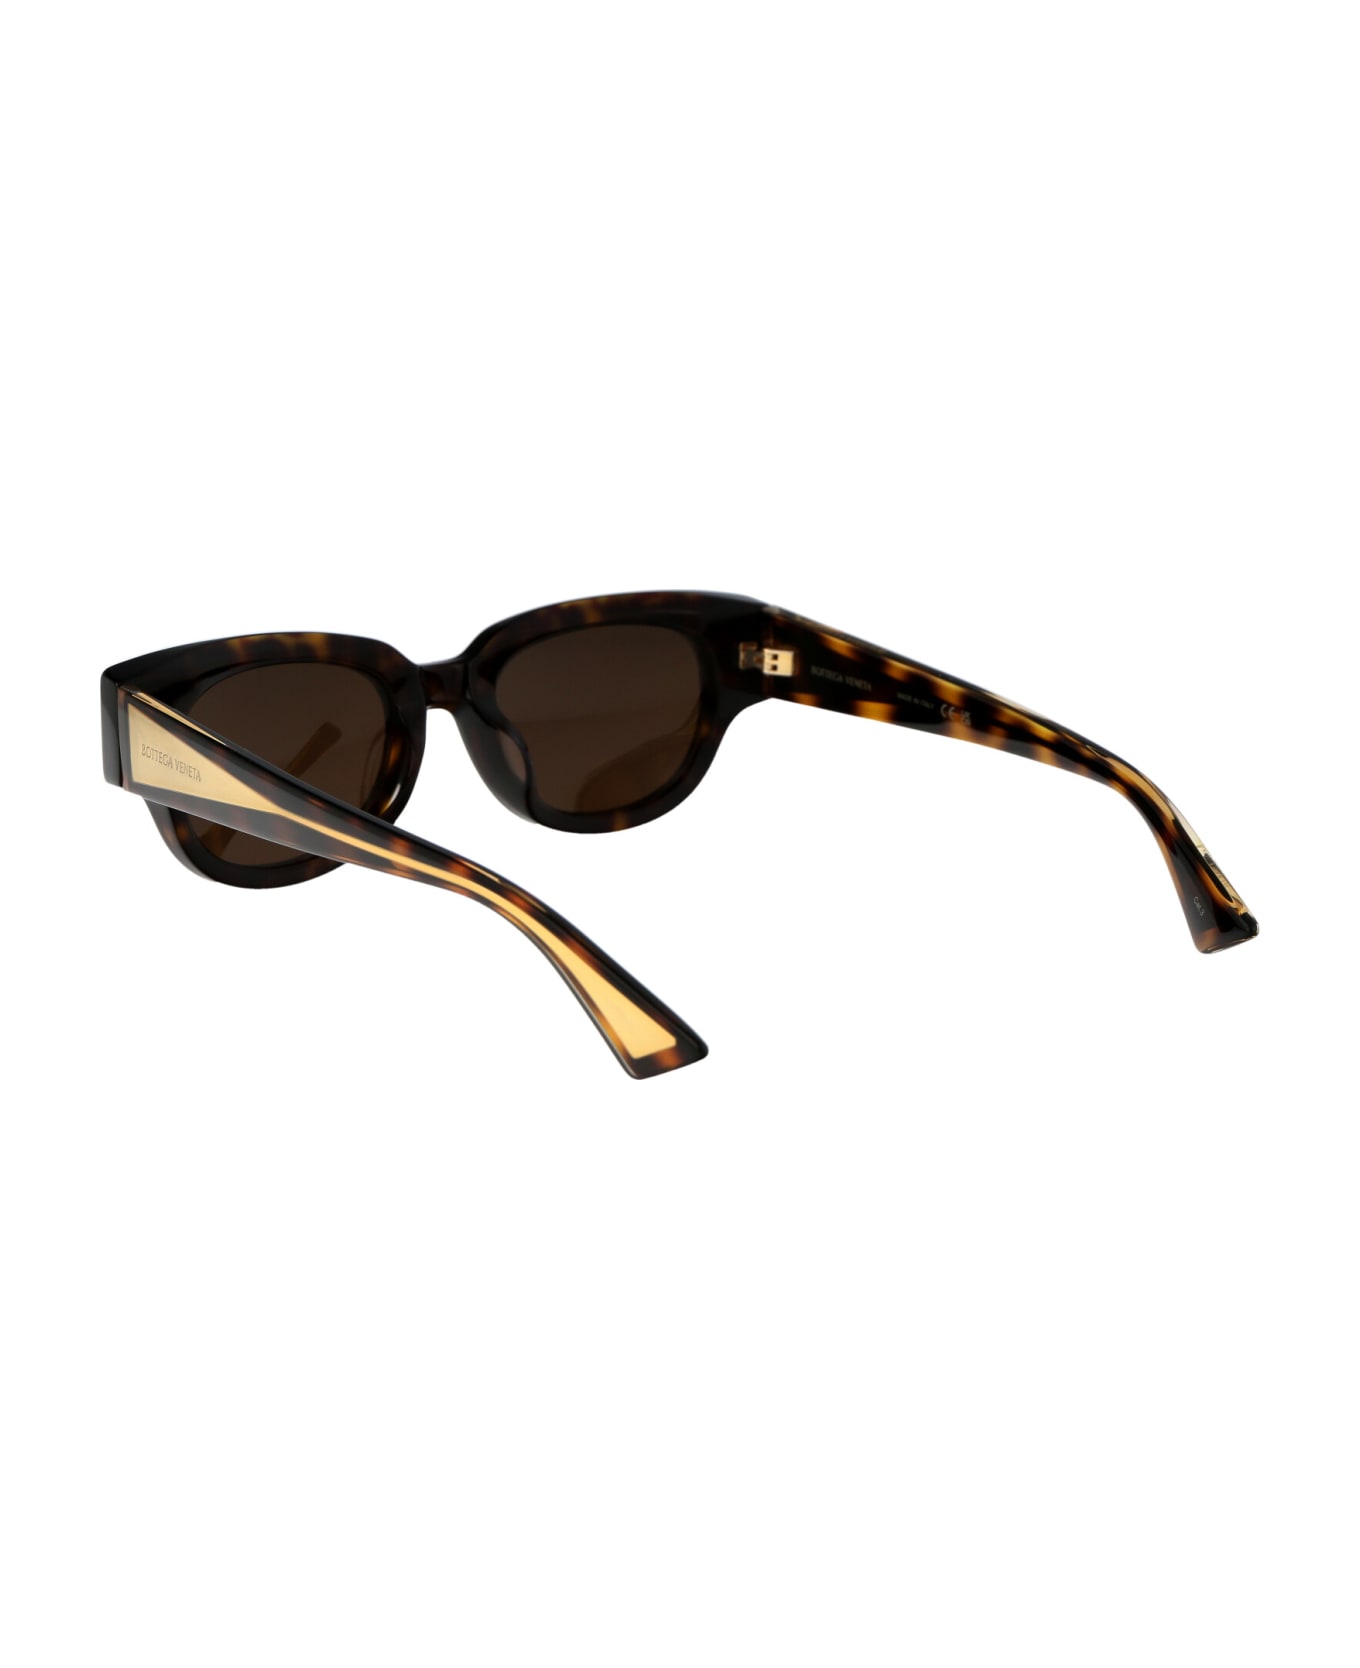 Bottega Veneta Eyewear Bv1278sa Sunglasses - 002 HAVANA CRYSTAL BROWN